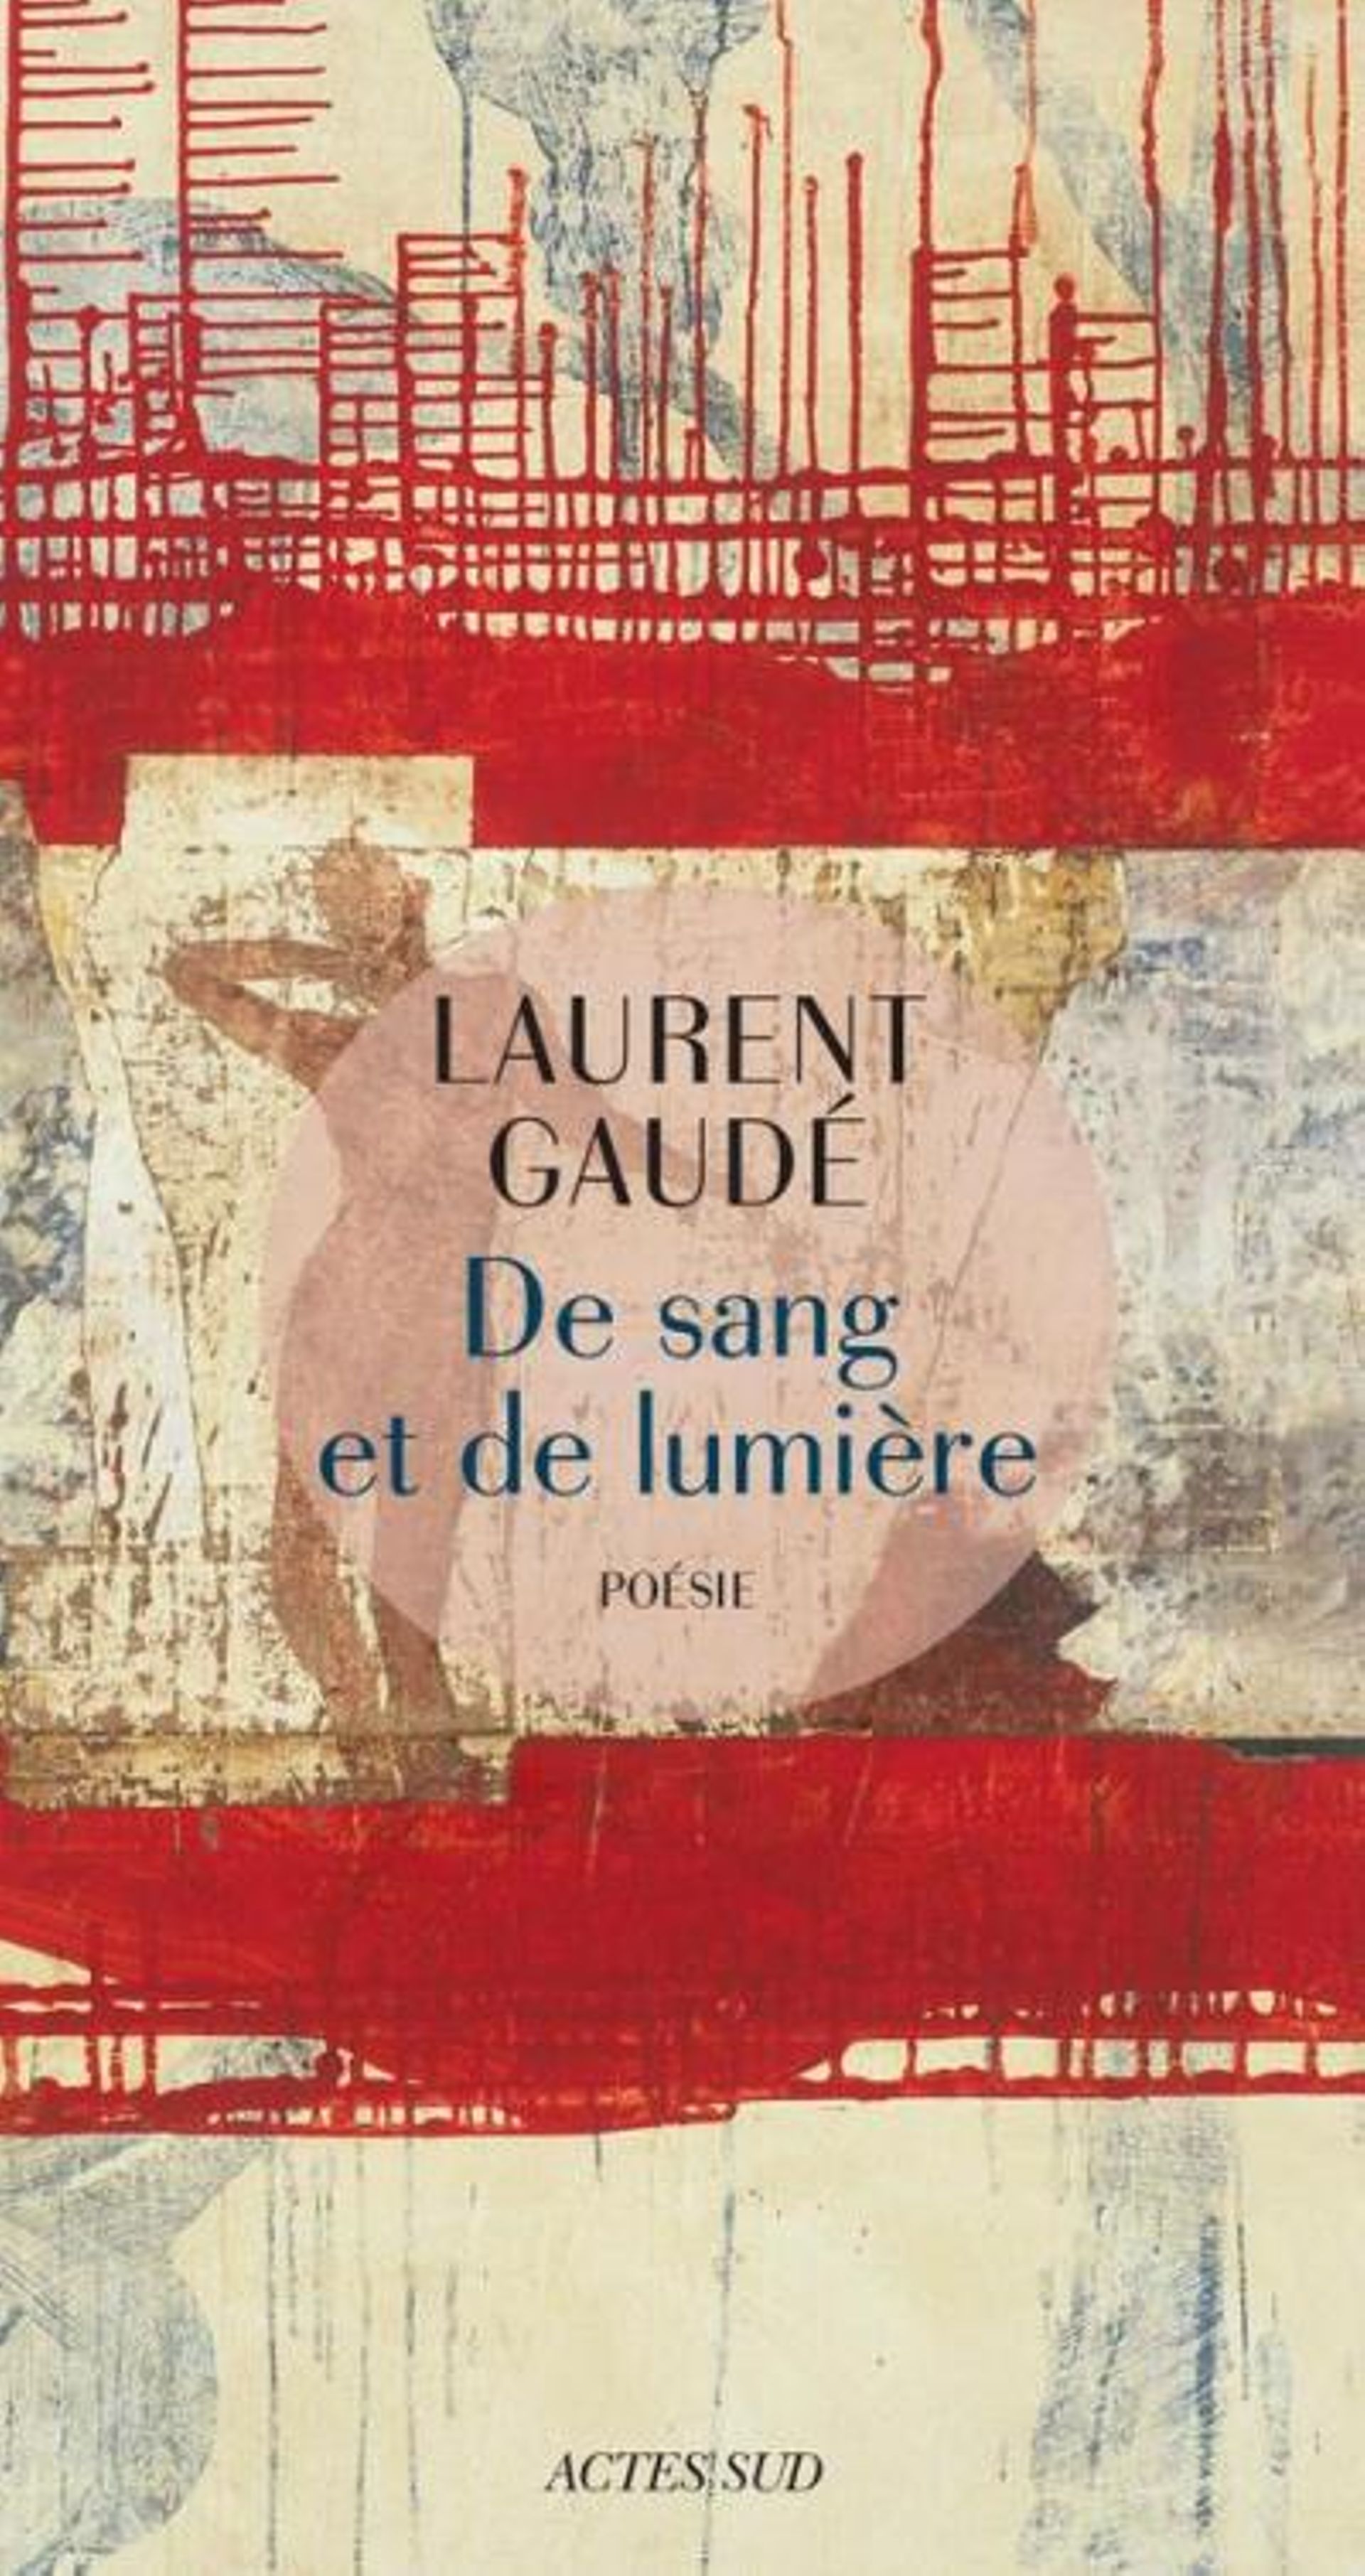 NUIT DES ECRIVAINS - Laurent Gaudé, un Goncourt et beaucoup d'humanité